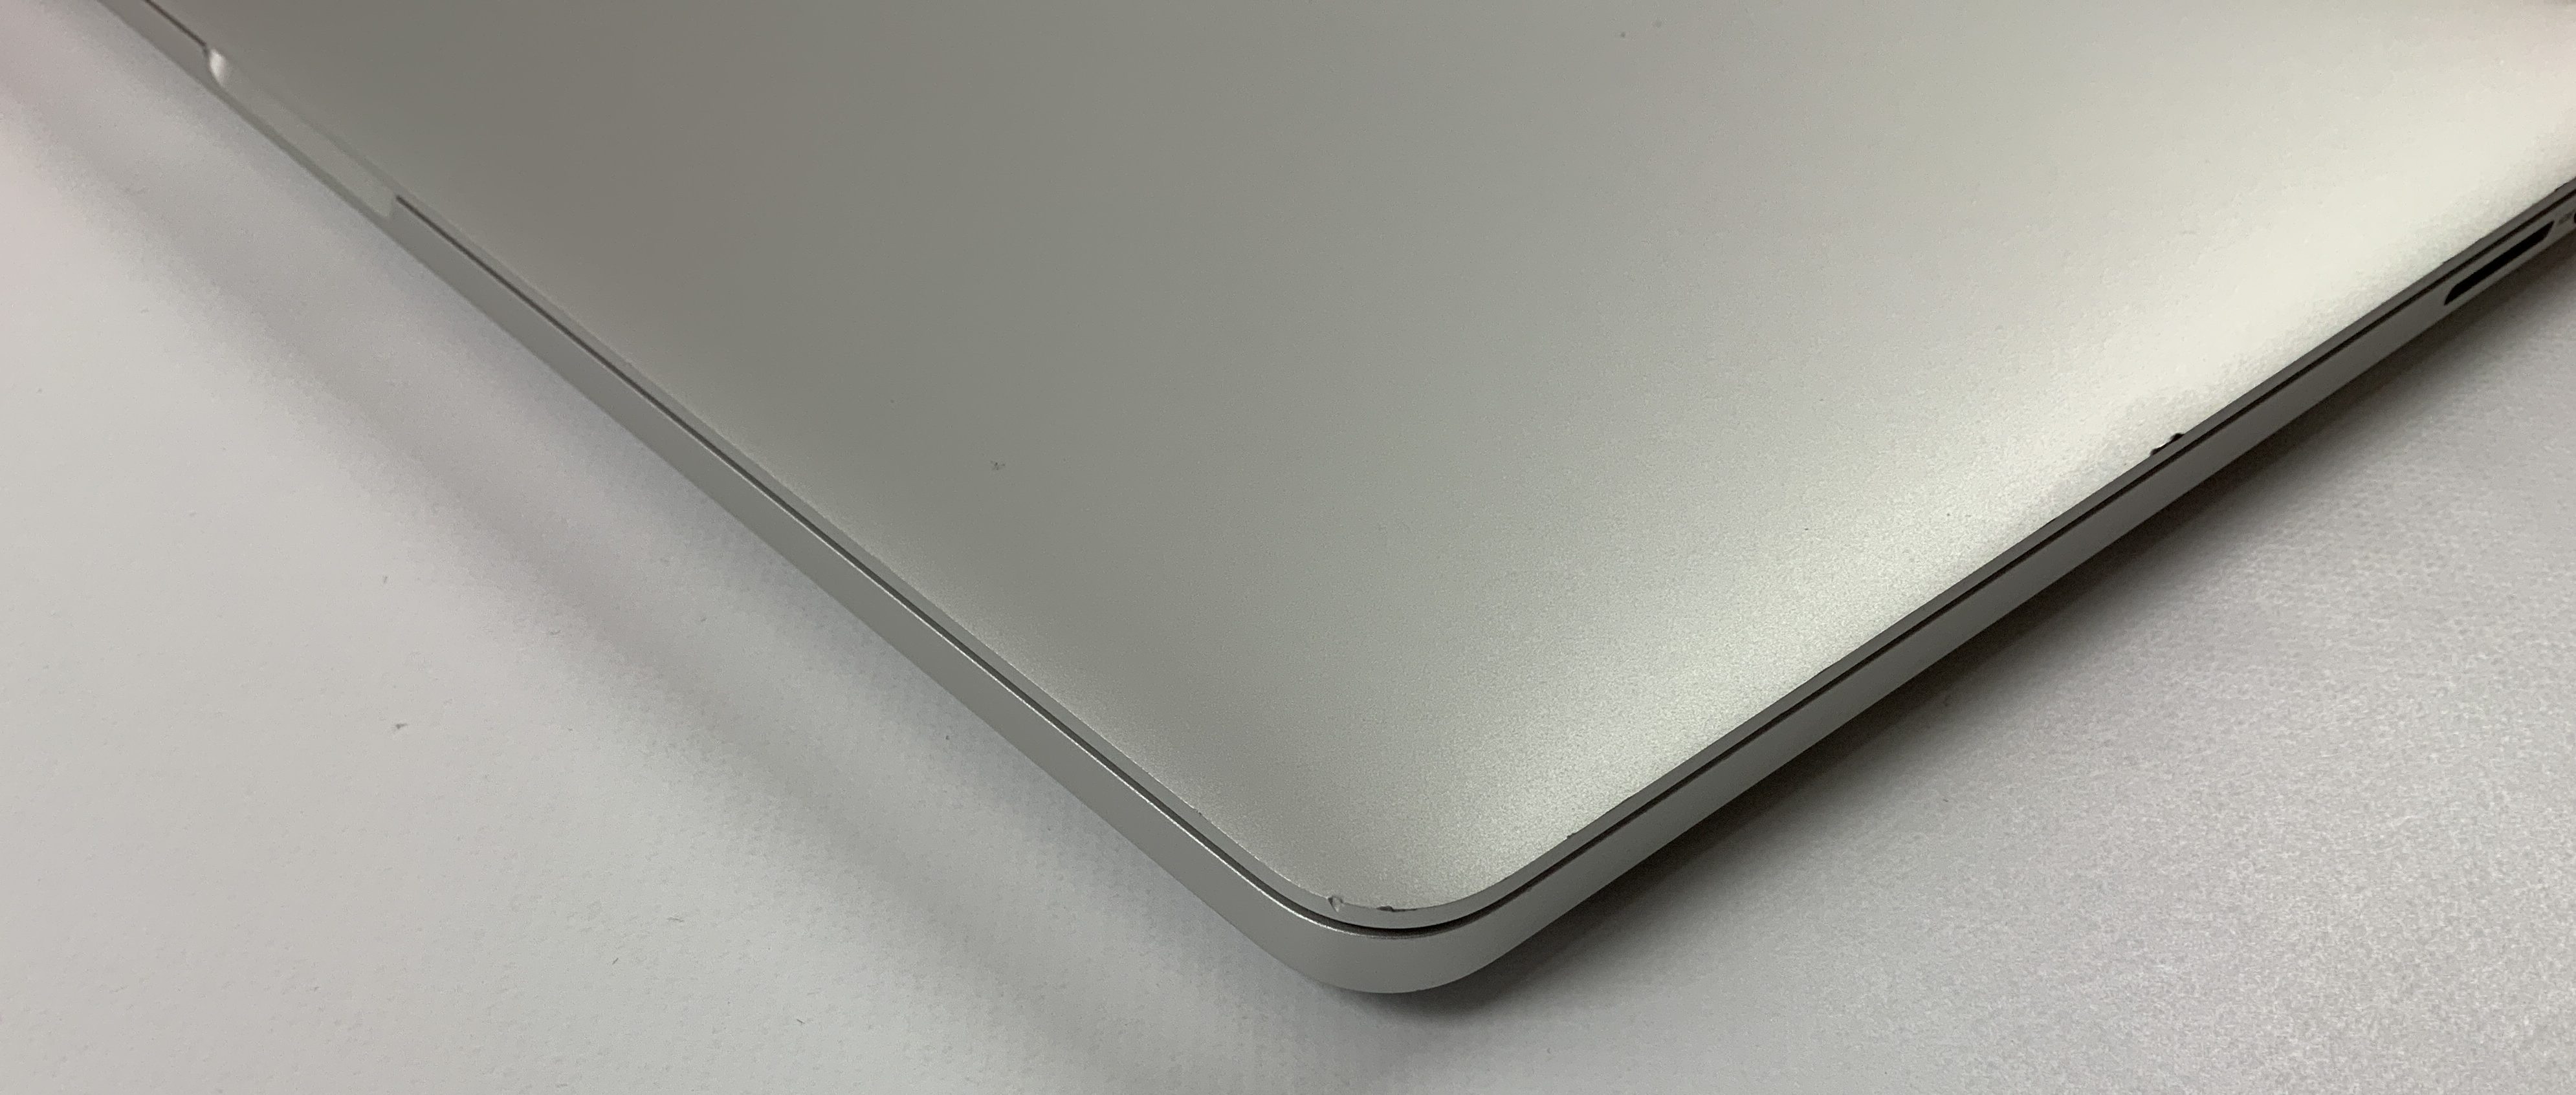 MacBook Pro Retina 15" Mid 2015 (Intel Quad-Core i7 2.2 GHz 16 GB RAM 256 GB SSD), Intel Quad-Core i7 2.2 GHz, 16 GB RAM, 256 GB SSD, Afbeelding 4